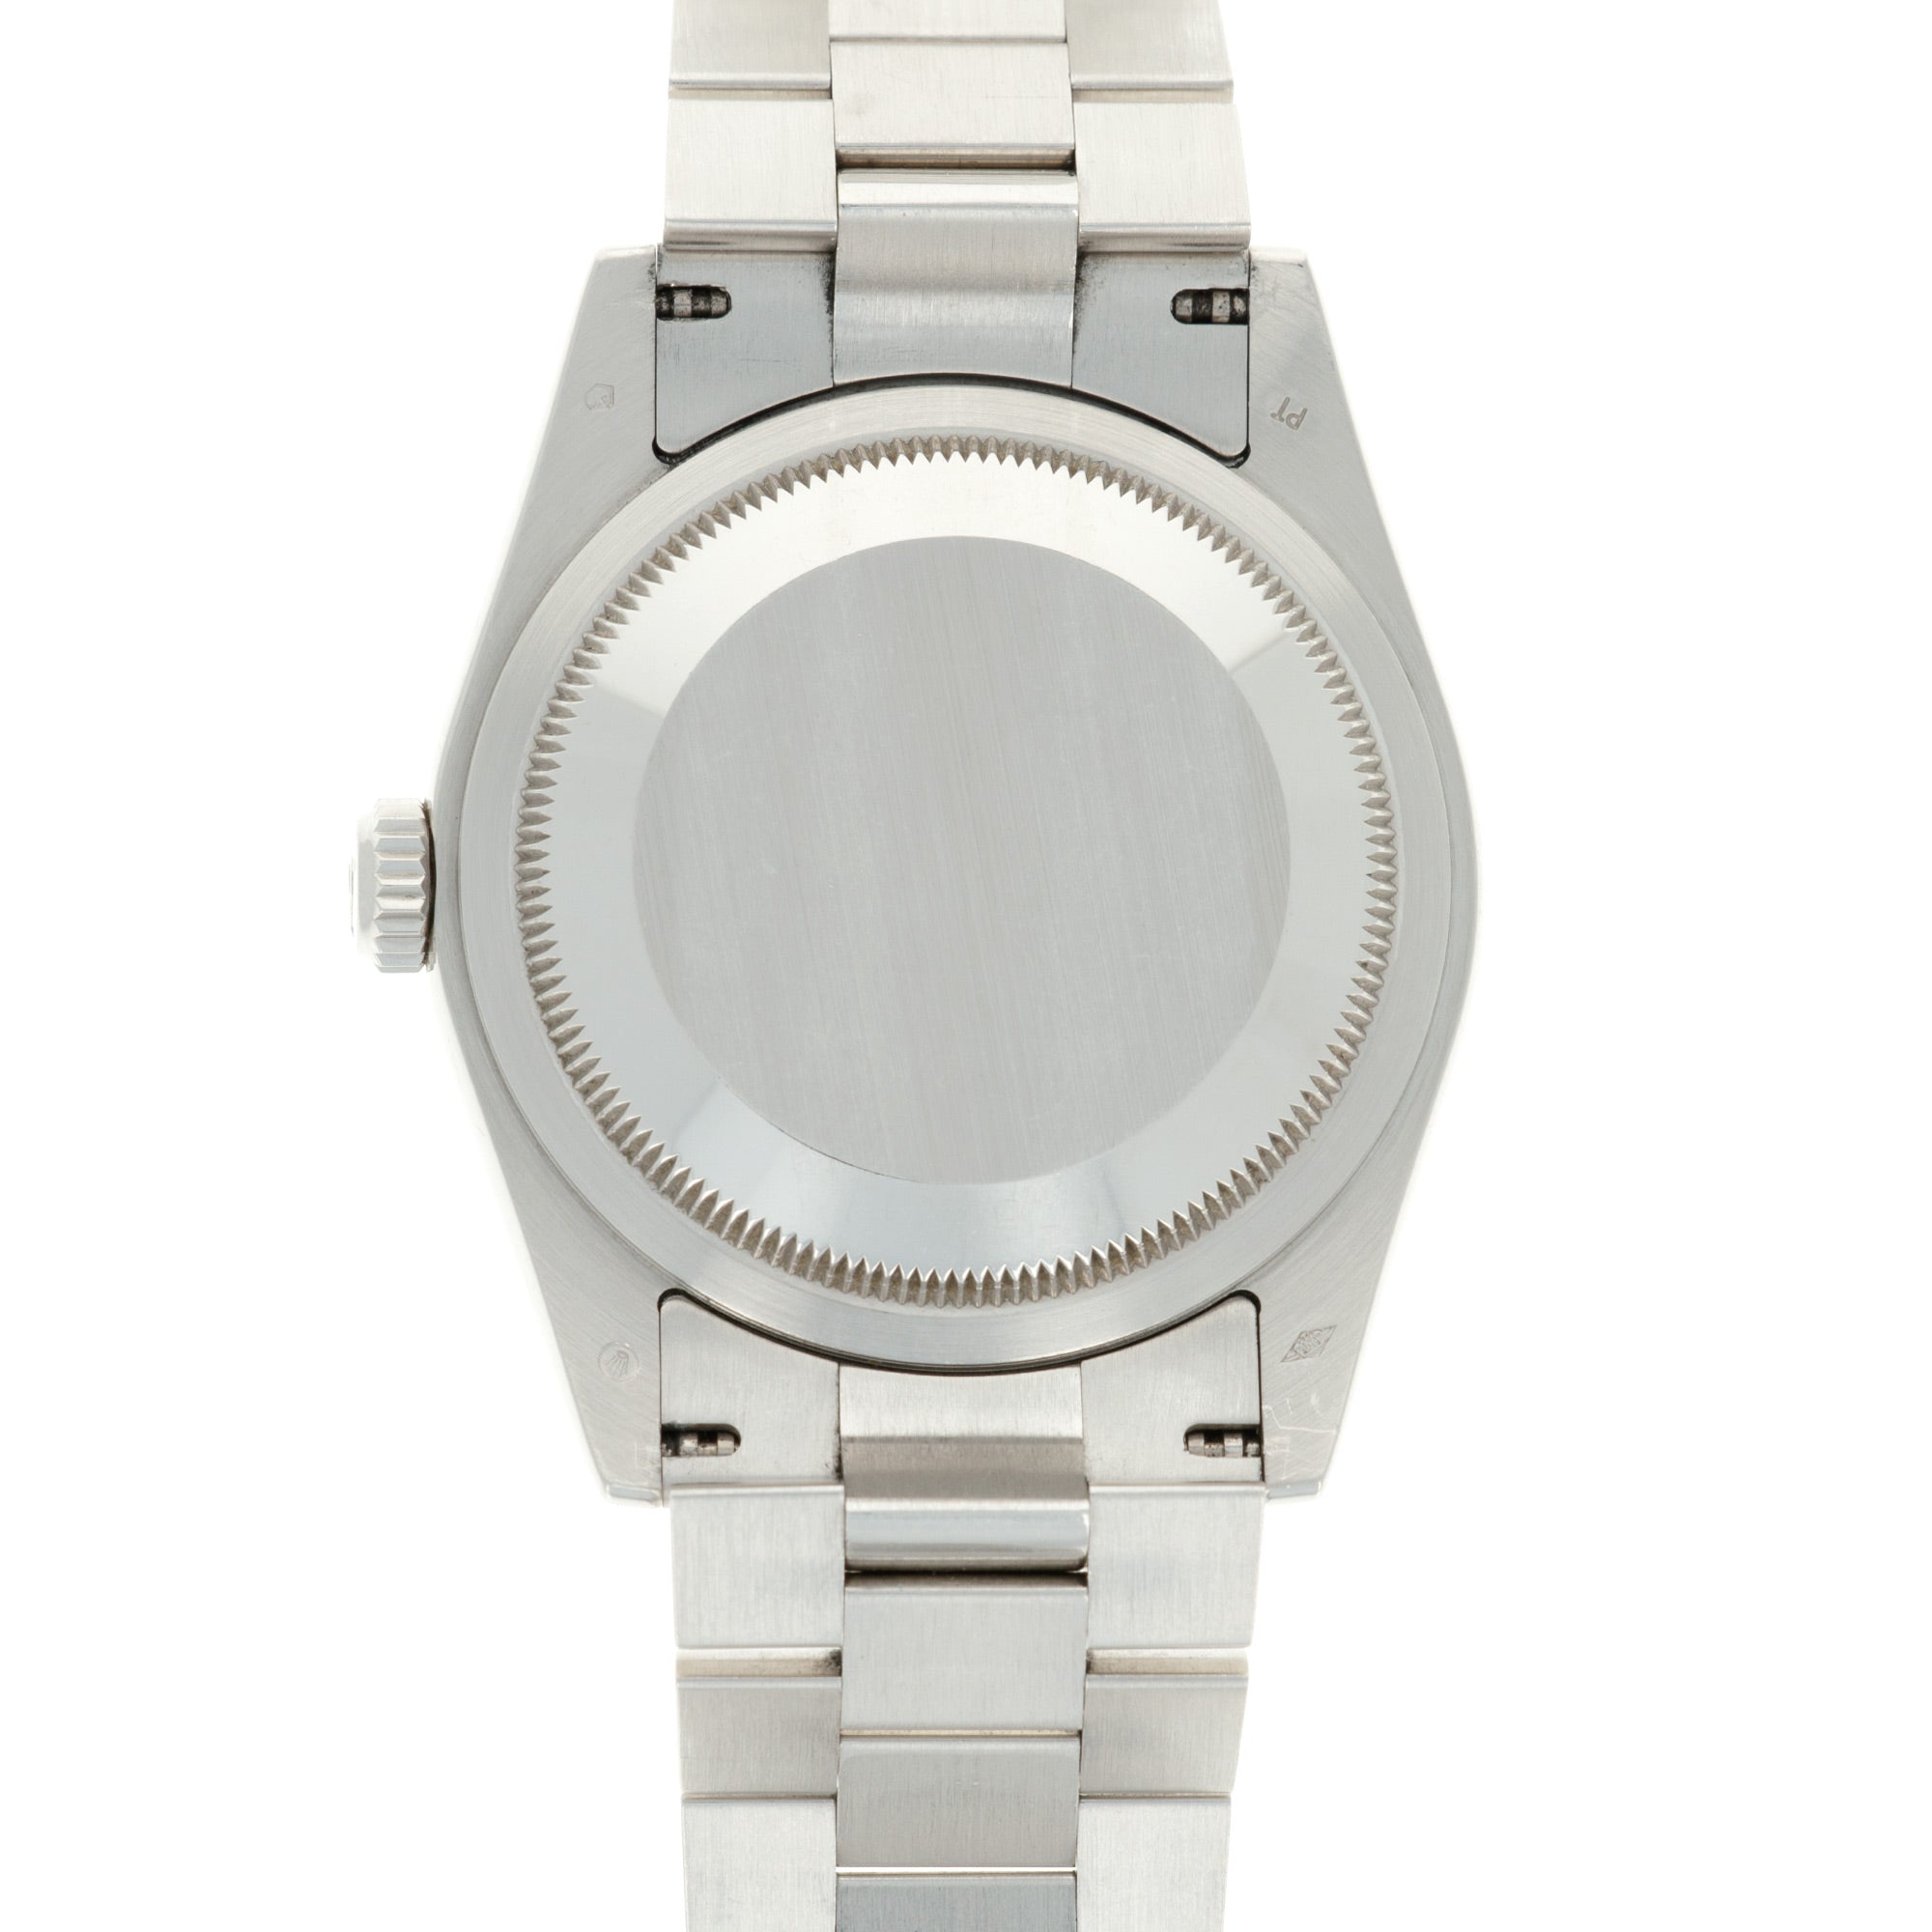 Rolex - Rolex Platinum Day-Date Pave Diamond Watch Ref. 118206 - The Keystone Watches